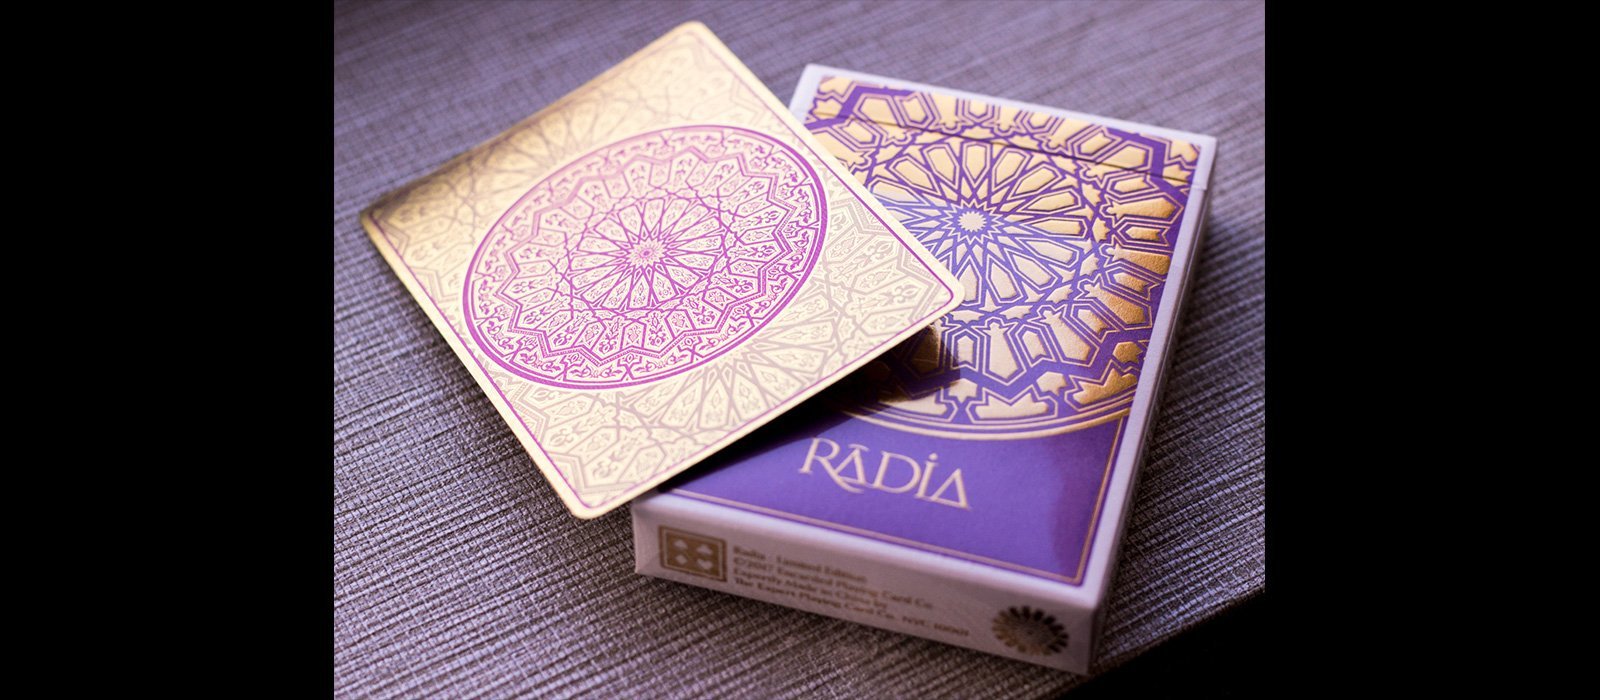 magic radia